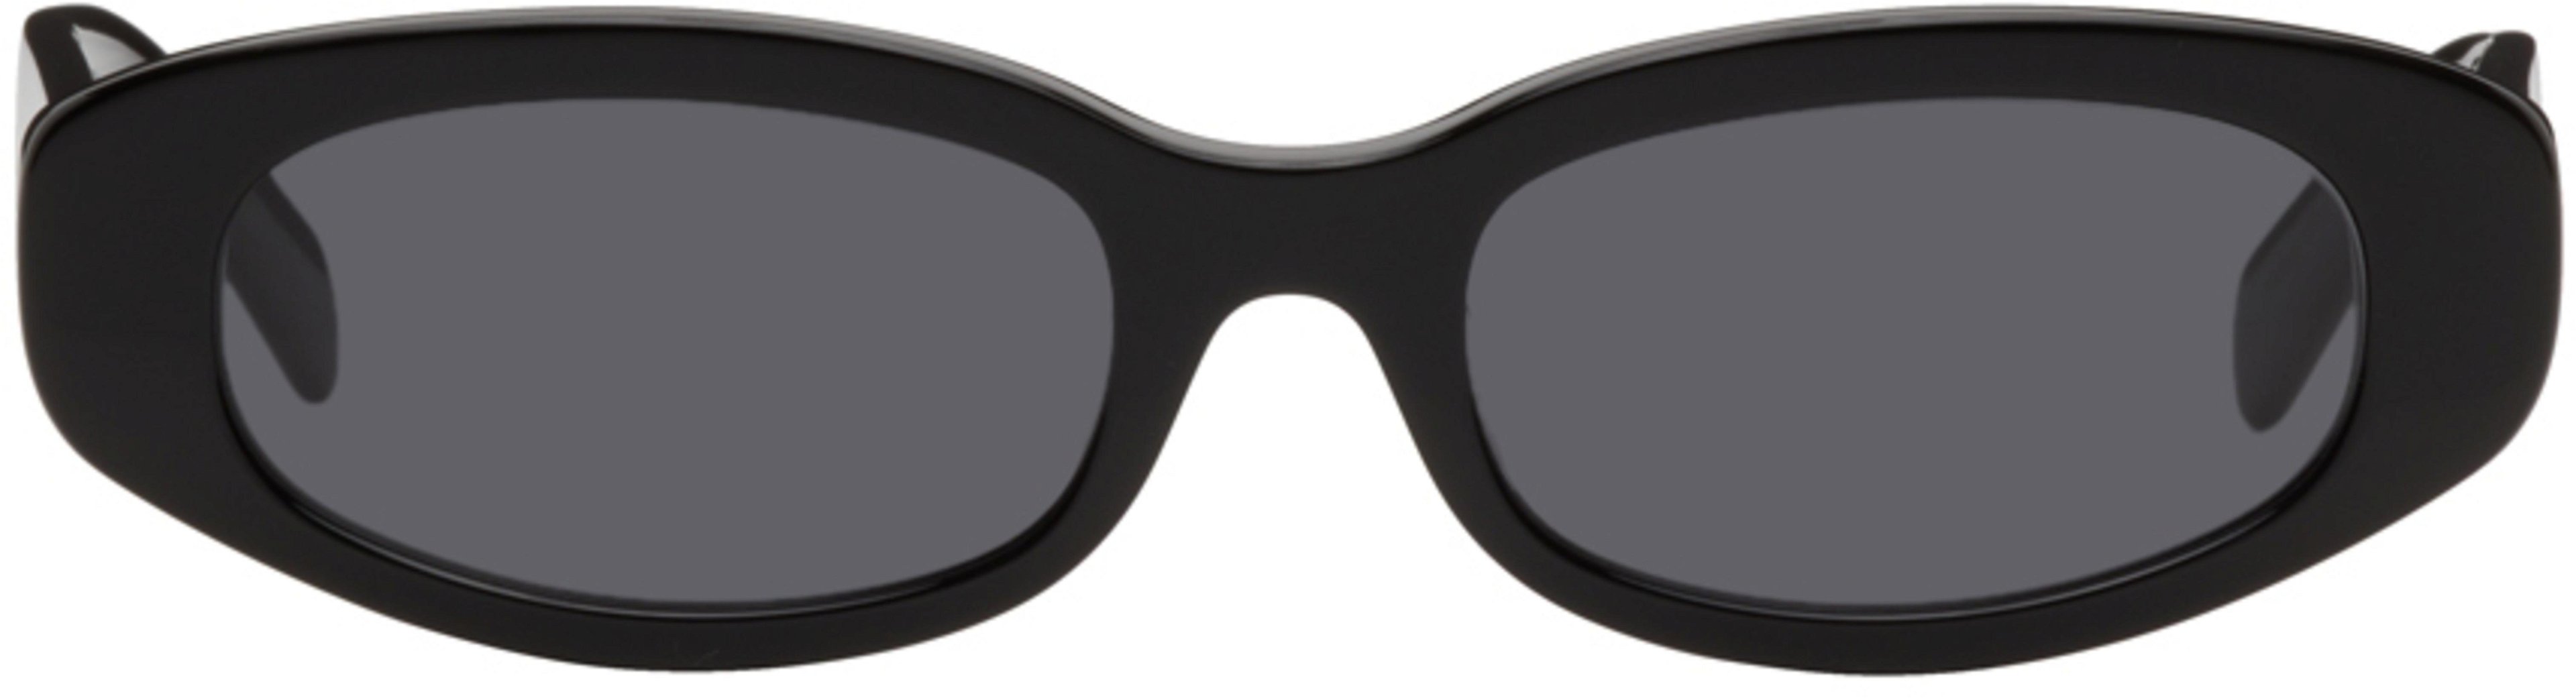 Black Plum Plum Sunglasses by BONNIE CLYDE